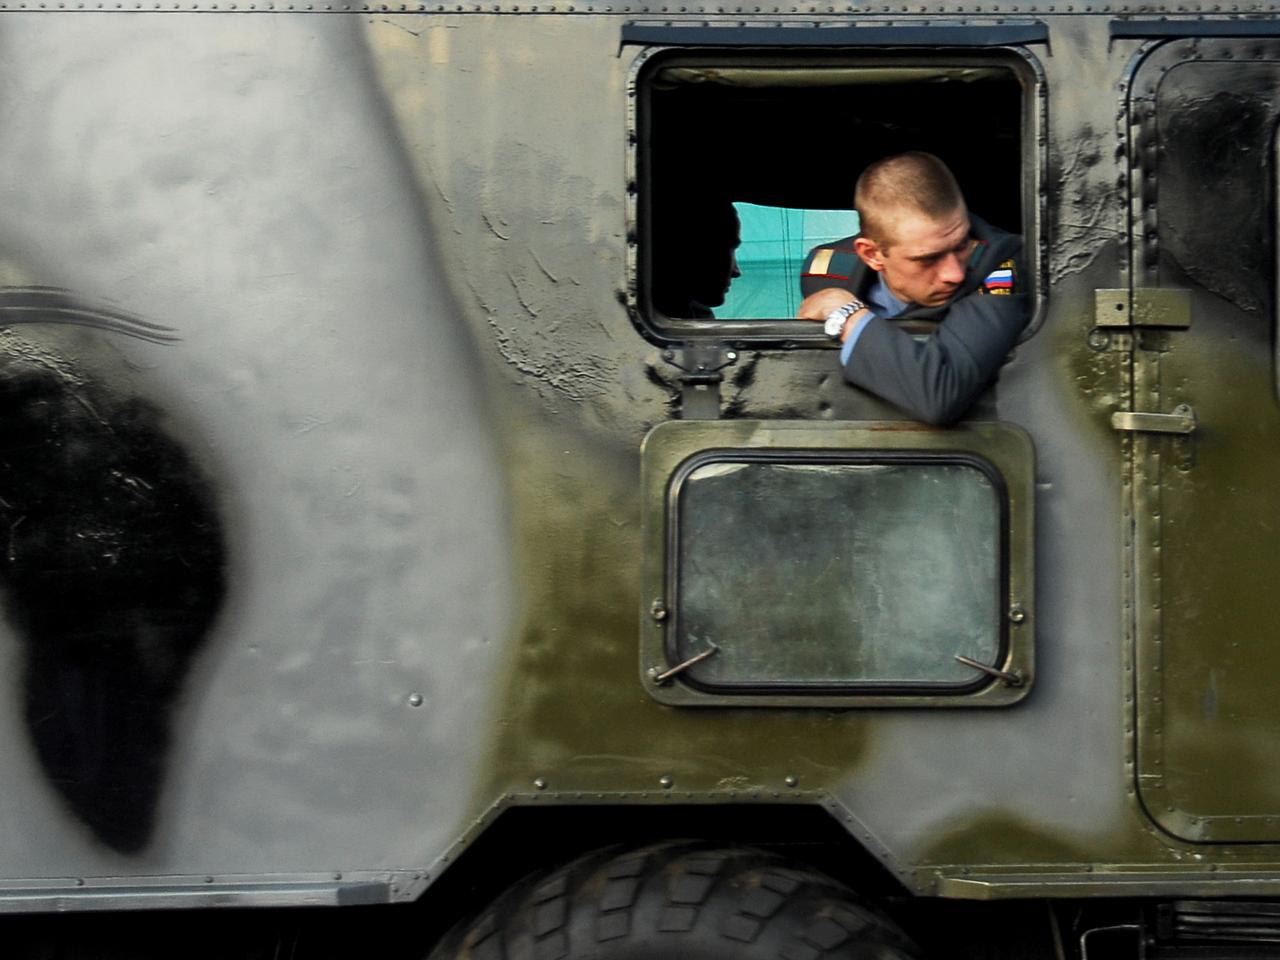 Rosyjski żołnierz zastrzelił taksówkarza z Rostowa nad Donem. Pokłócili się o Ukrainę